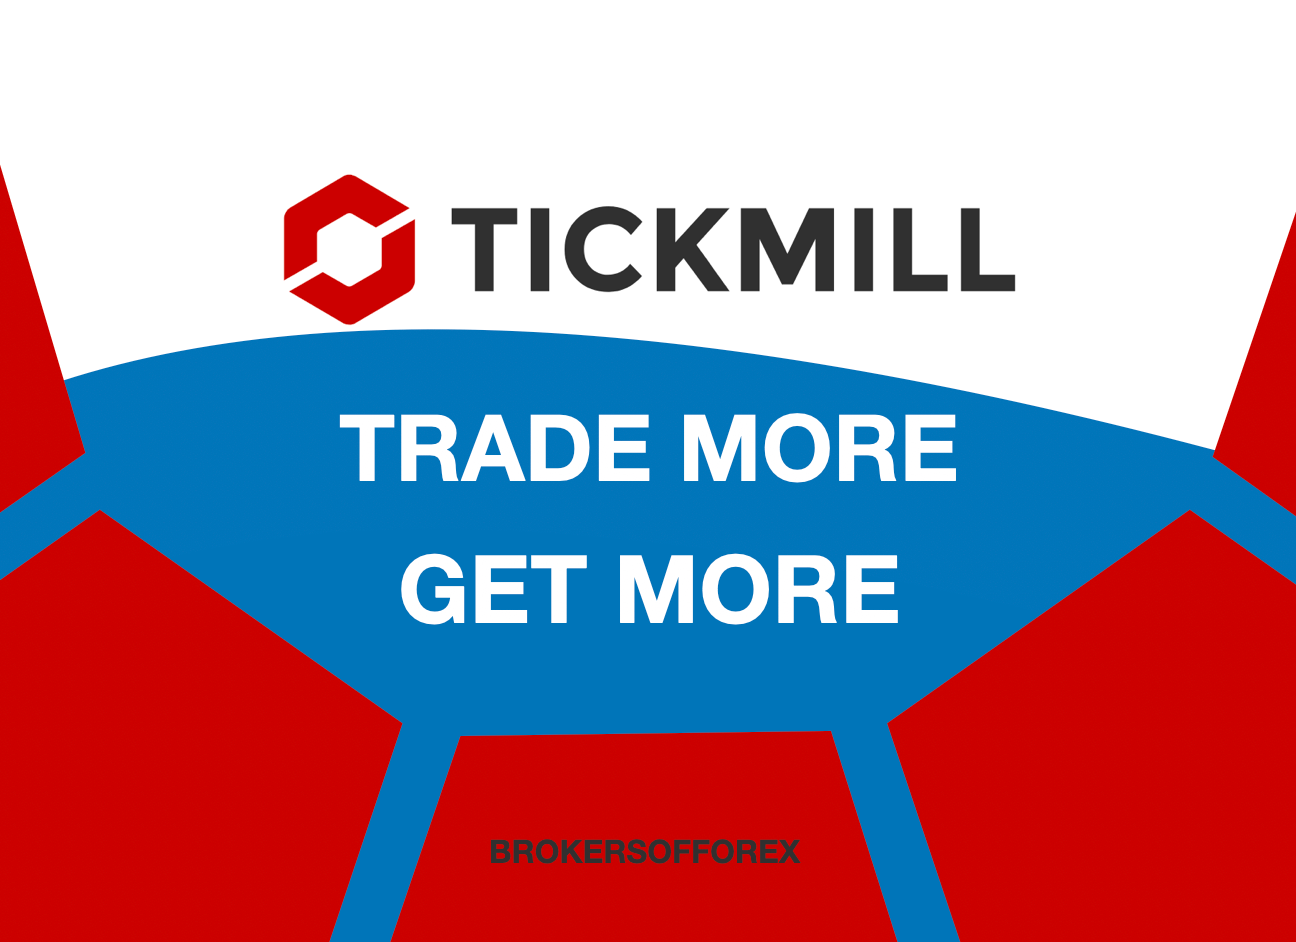 Tickmill Trade More Win More